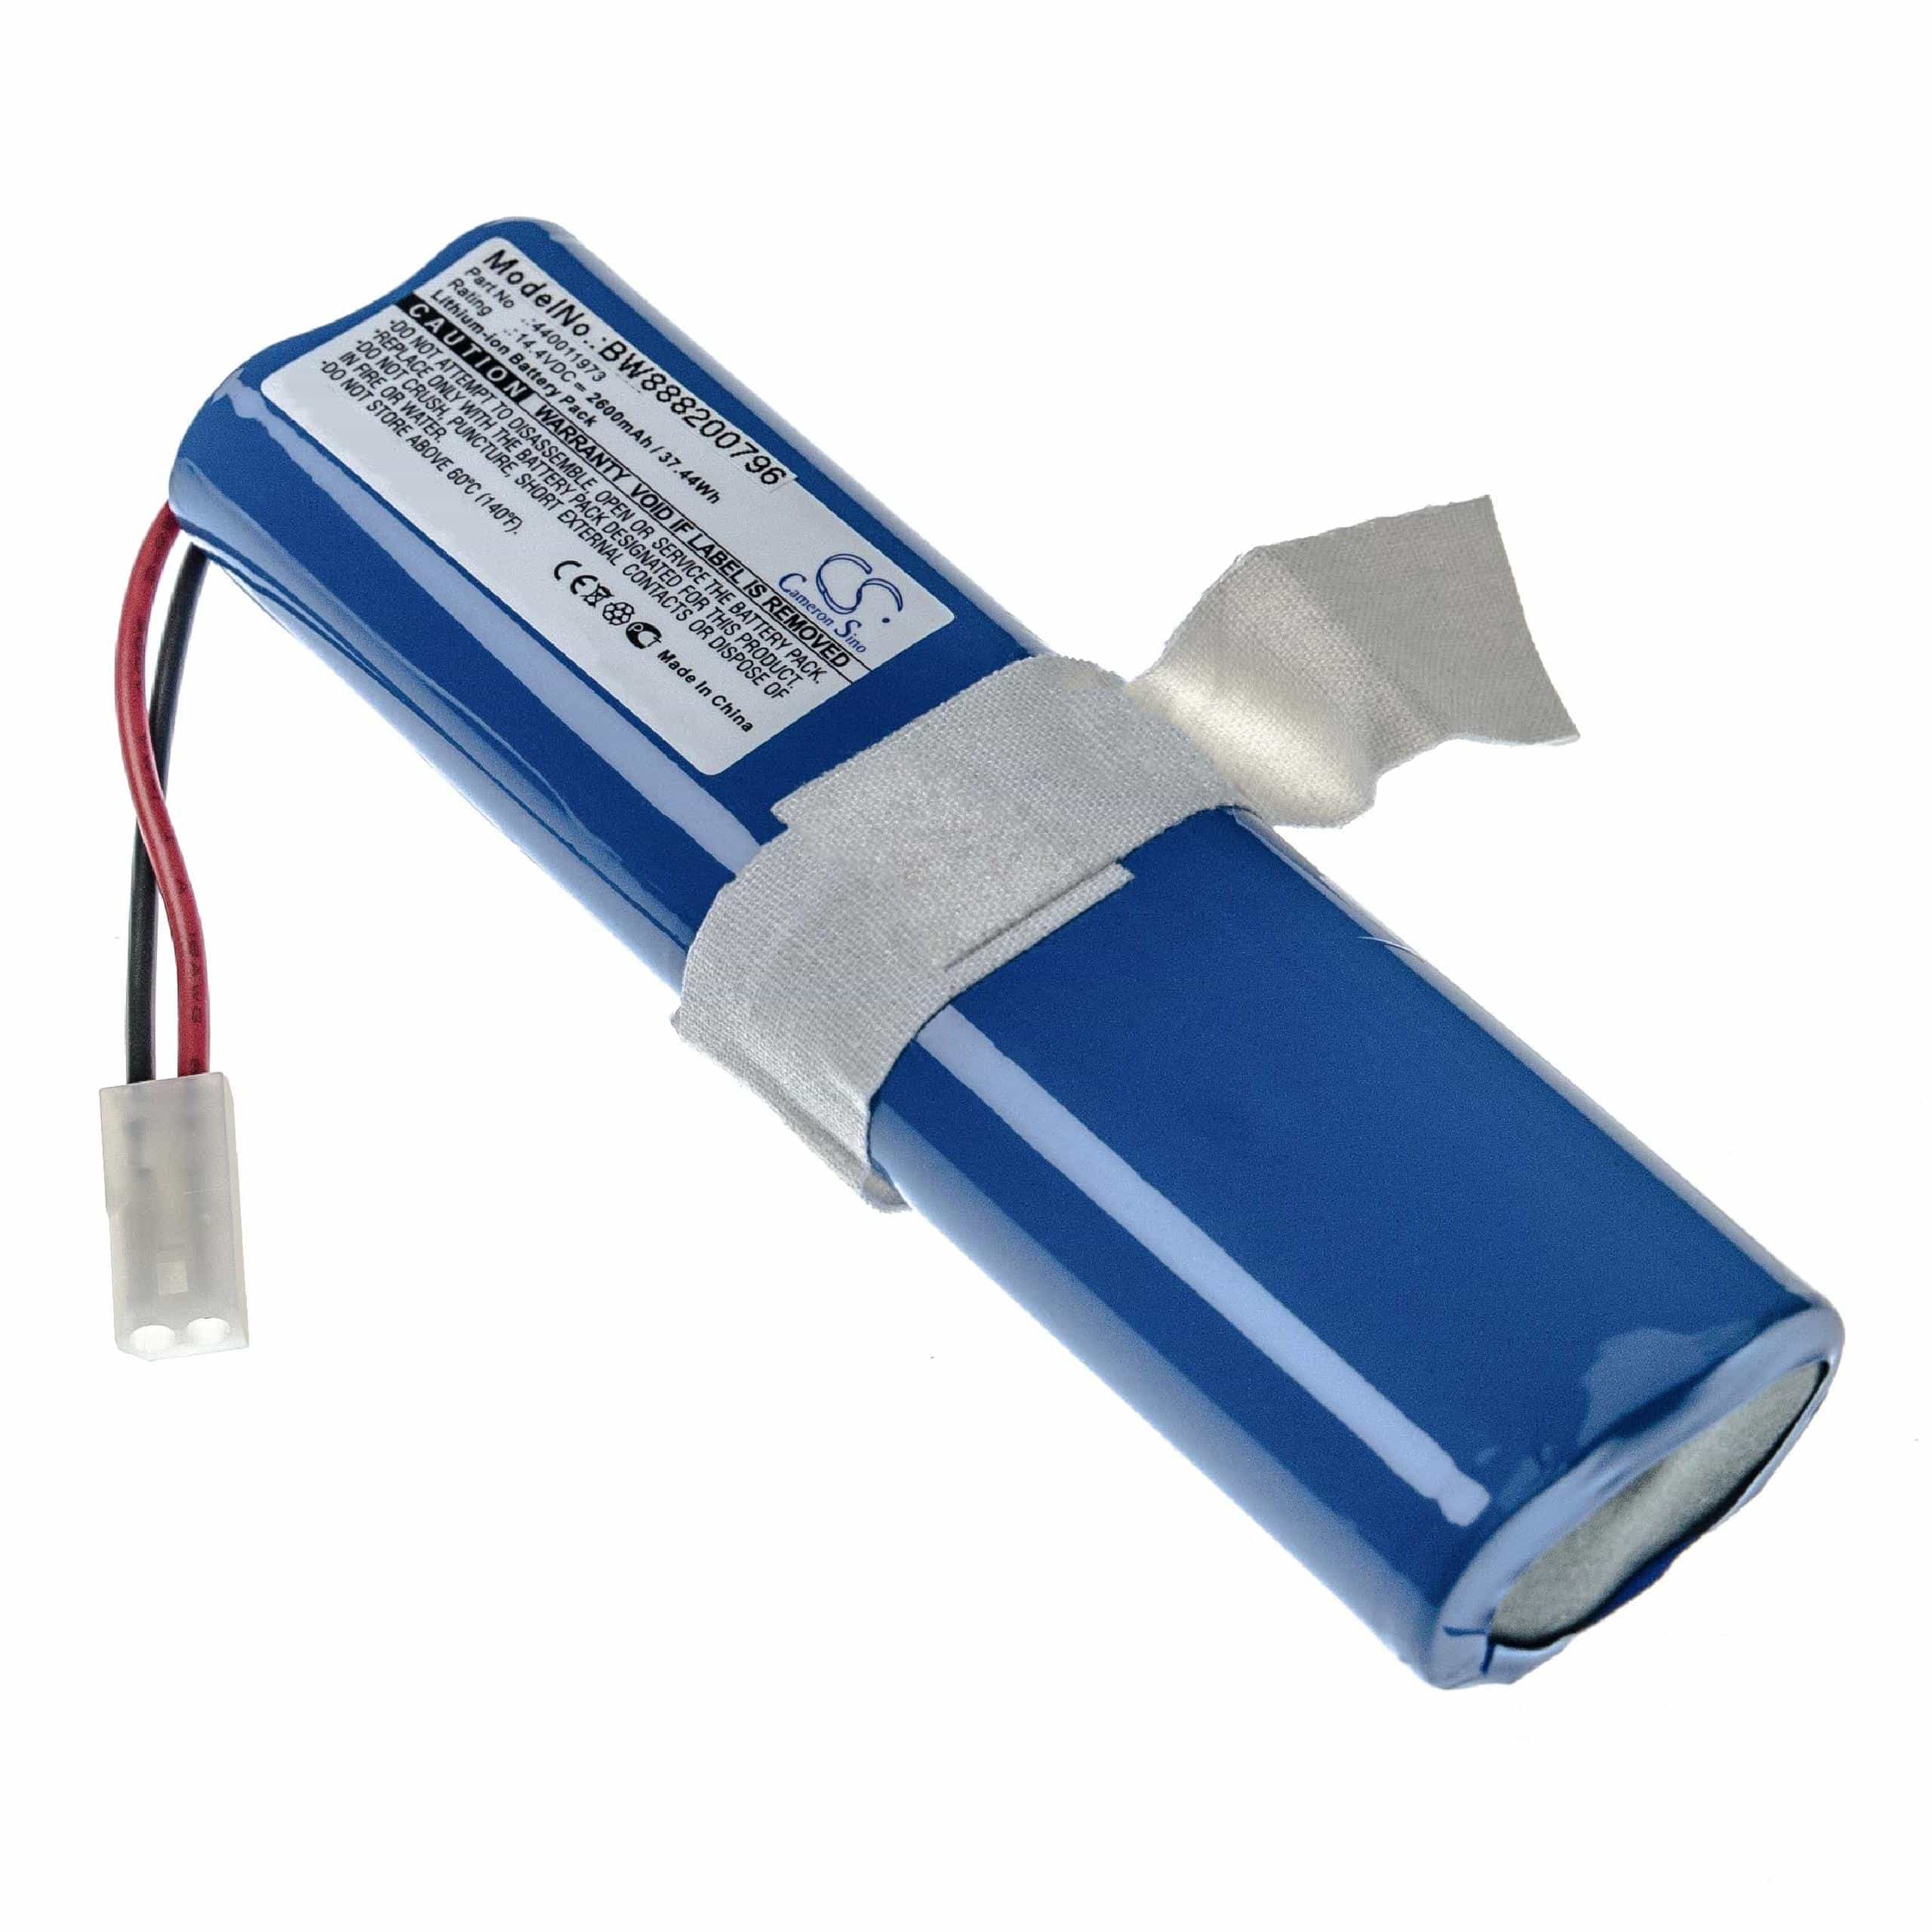 Batterie remplace Hoover 440011973 pour robot aspirateur - 2600mAh 14,4V Li-ion